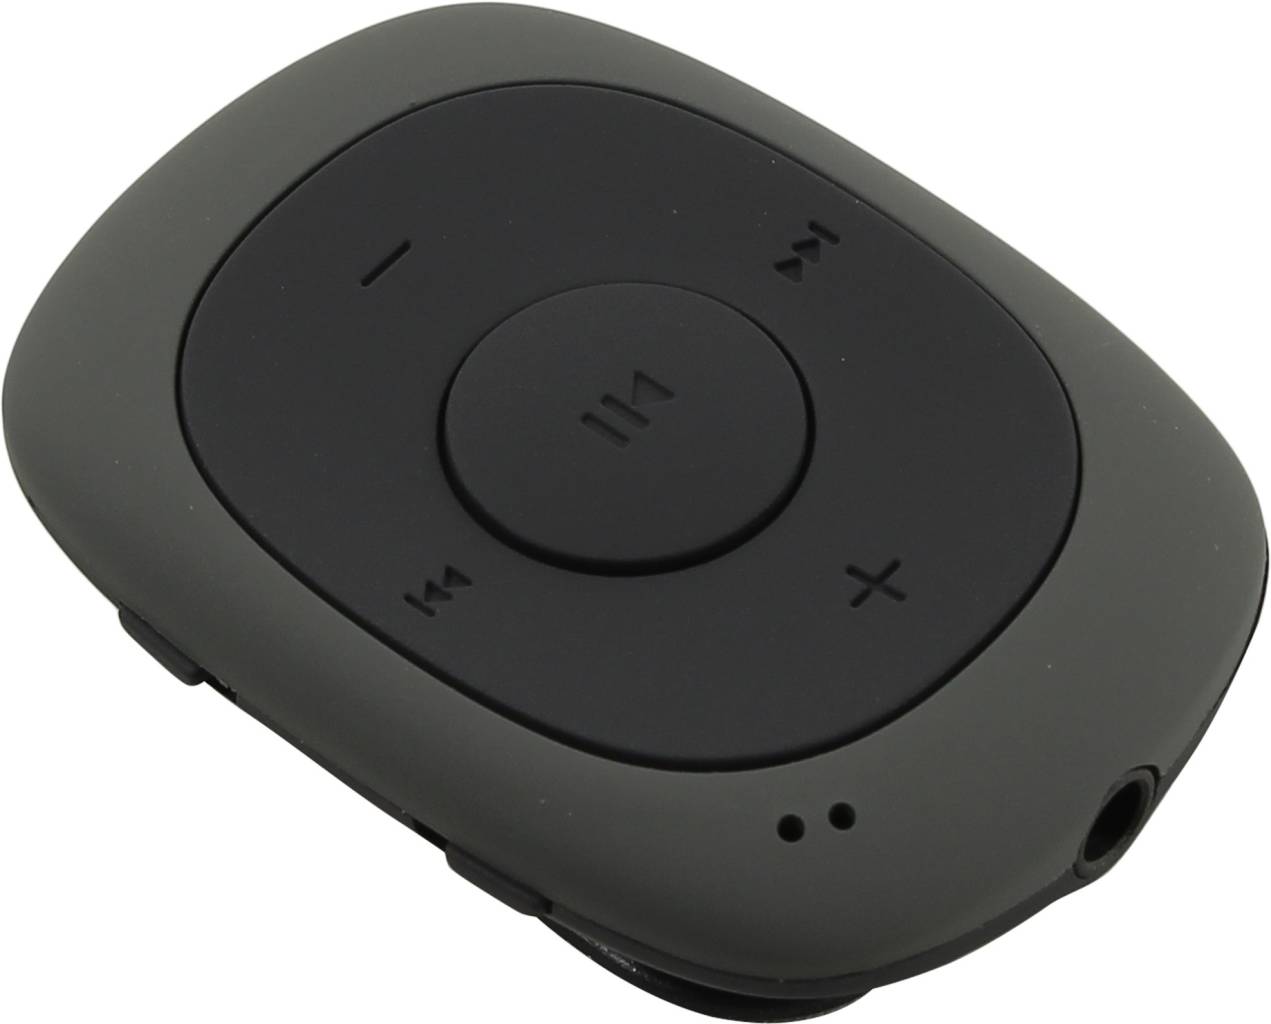   Digma [C2L-4GB Grey] (MP3 Player,4Gb,USB)